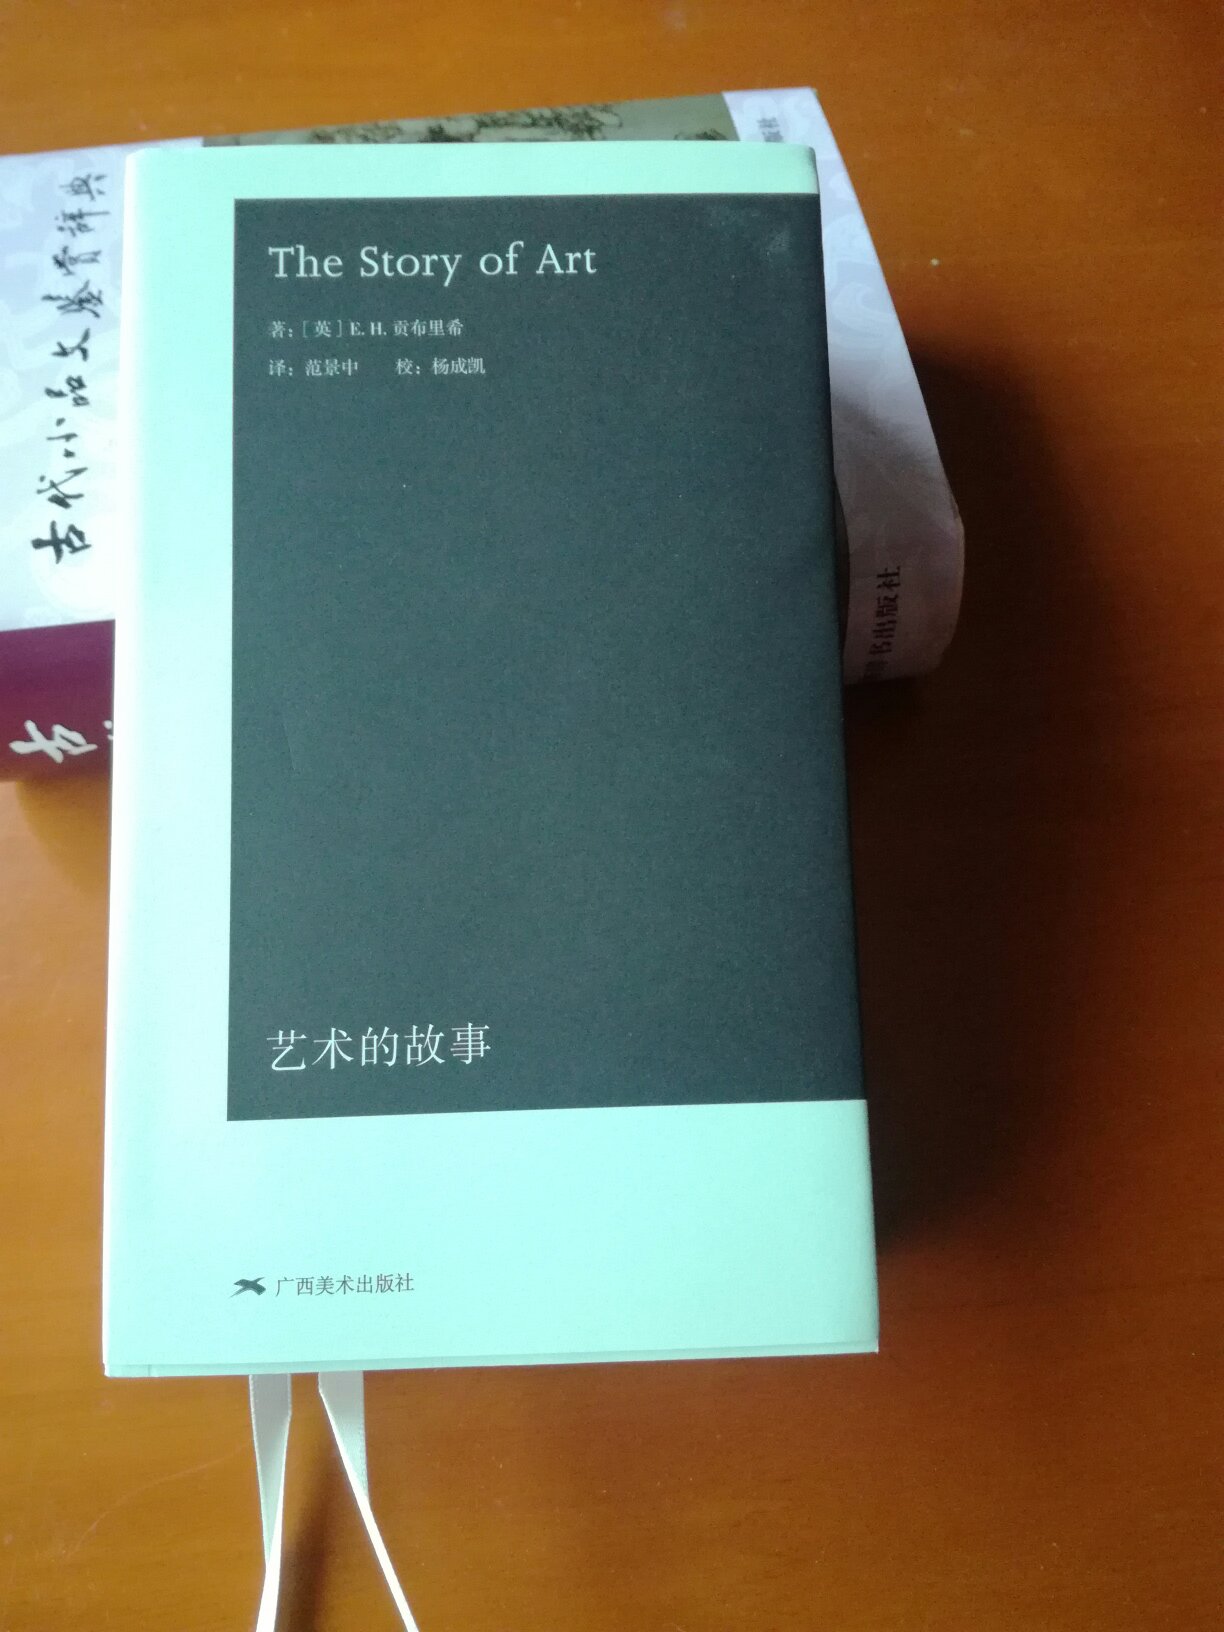 慢慢看。艺术的故事（袖珍本）》中文版出版30年后，首次全面修订。图文分开，文字部分用**纸印刷，更加轻薄，便于携带。这是实话